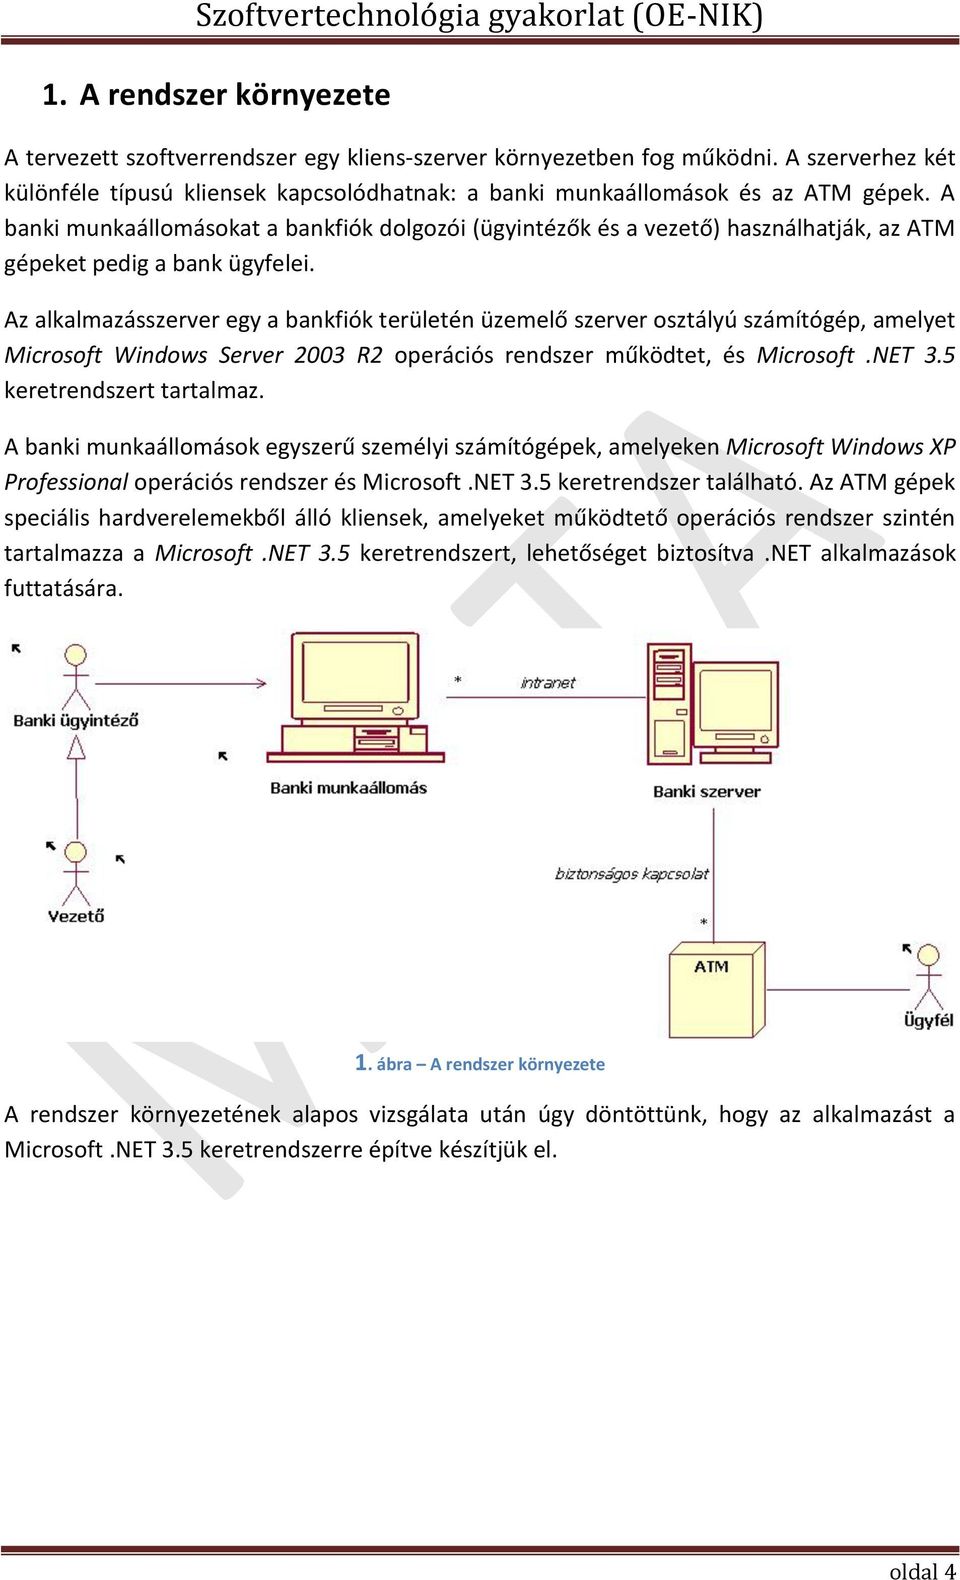 Az alkalmazásszerver egy a bankfiók területén üzemelő szerver osztályú számítógép, amelyet Microsoft Windows Server 2003 R2 operációs rendszer működtet, és Microsoft.NET 3.5 keretrendszert tartalmaz.